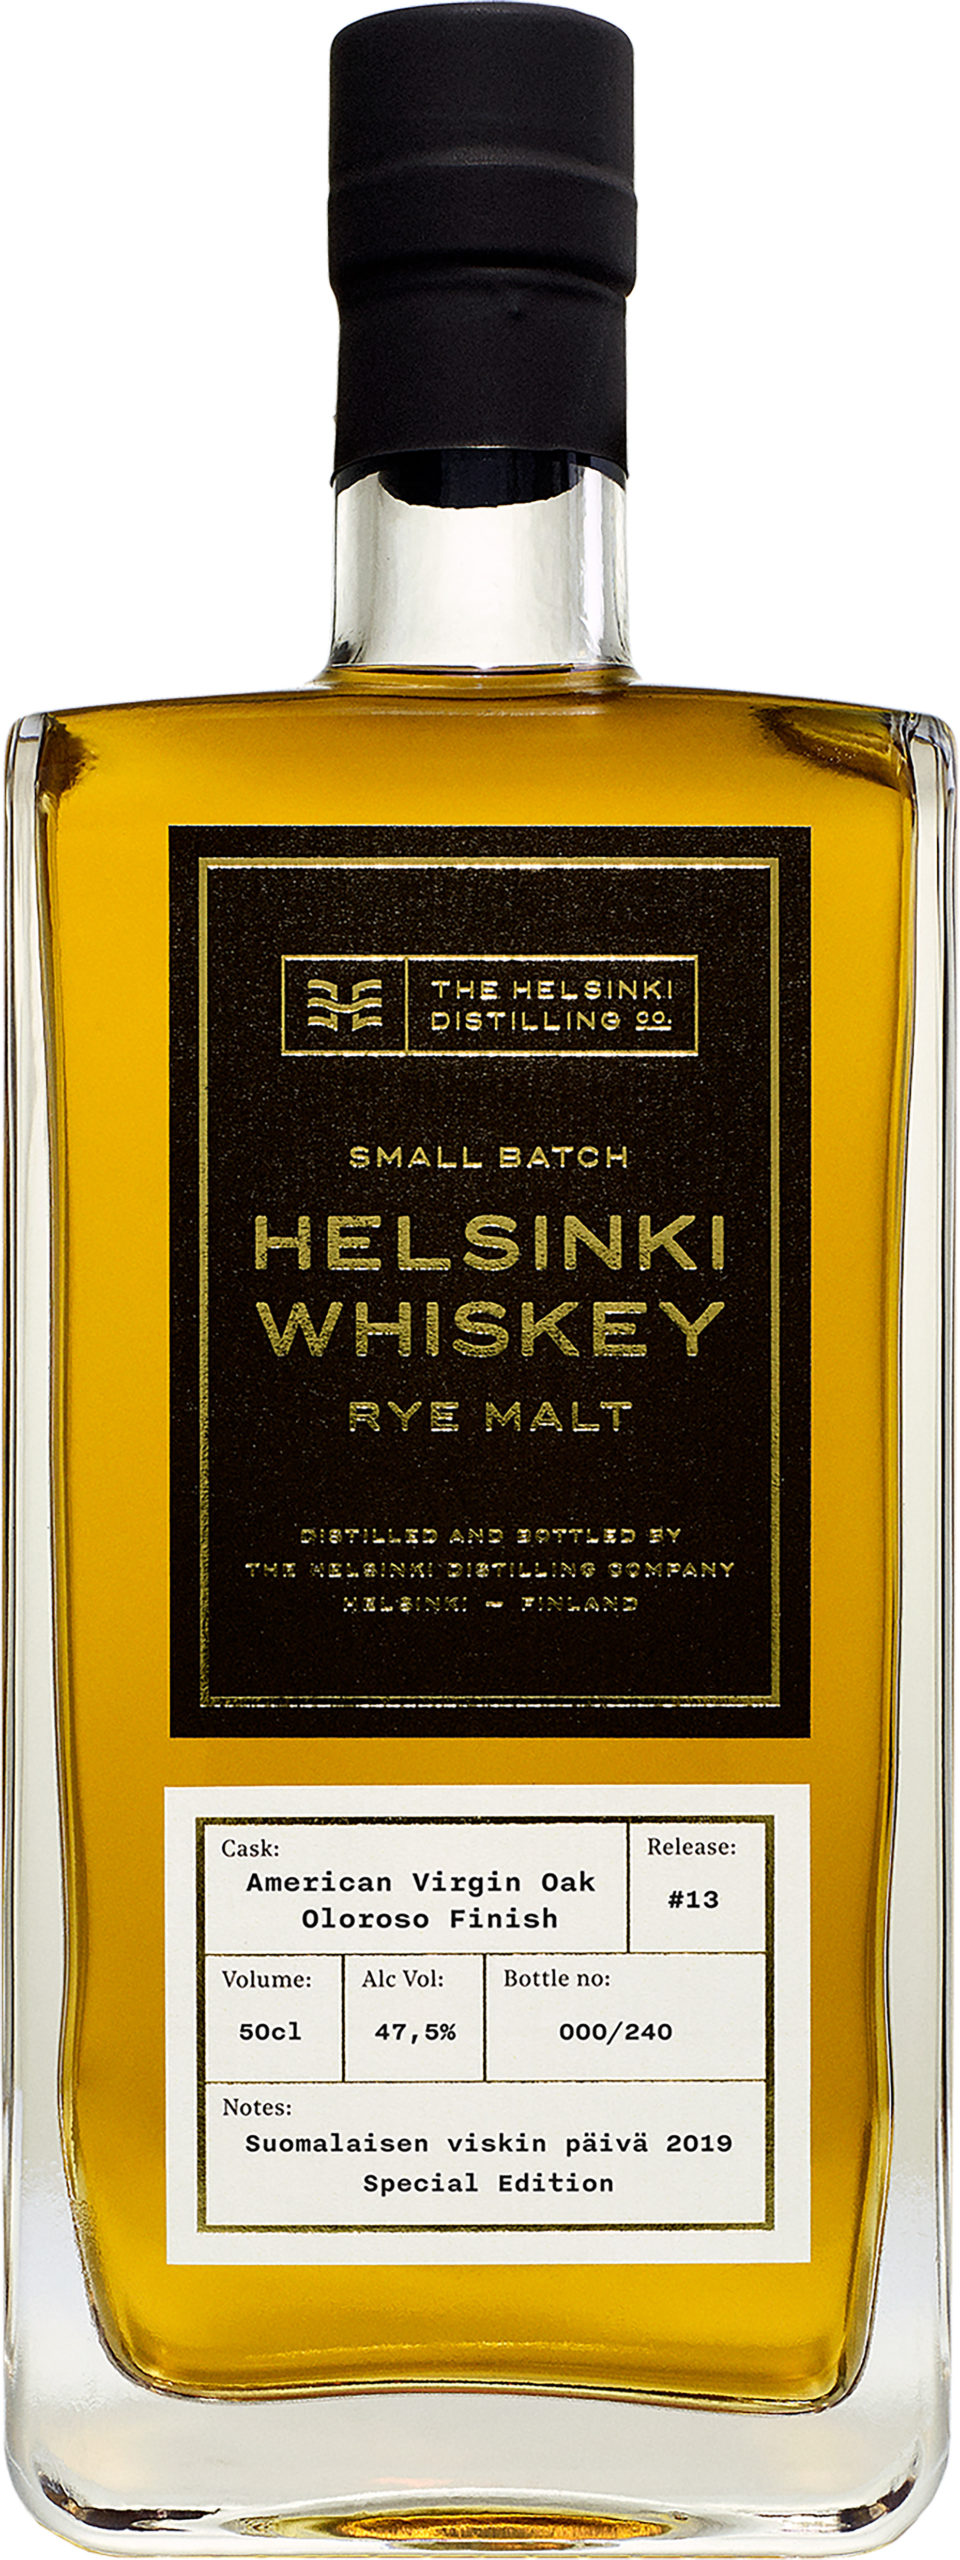 Helsinki Whiskey Release #13 Oloroso Finish Rye Malt